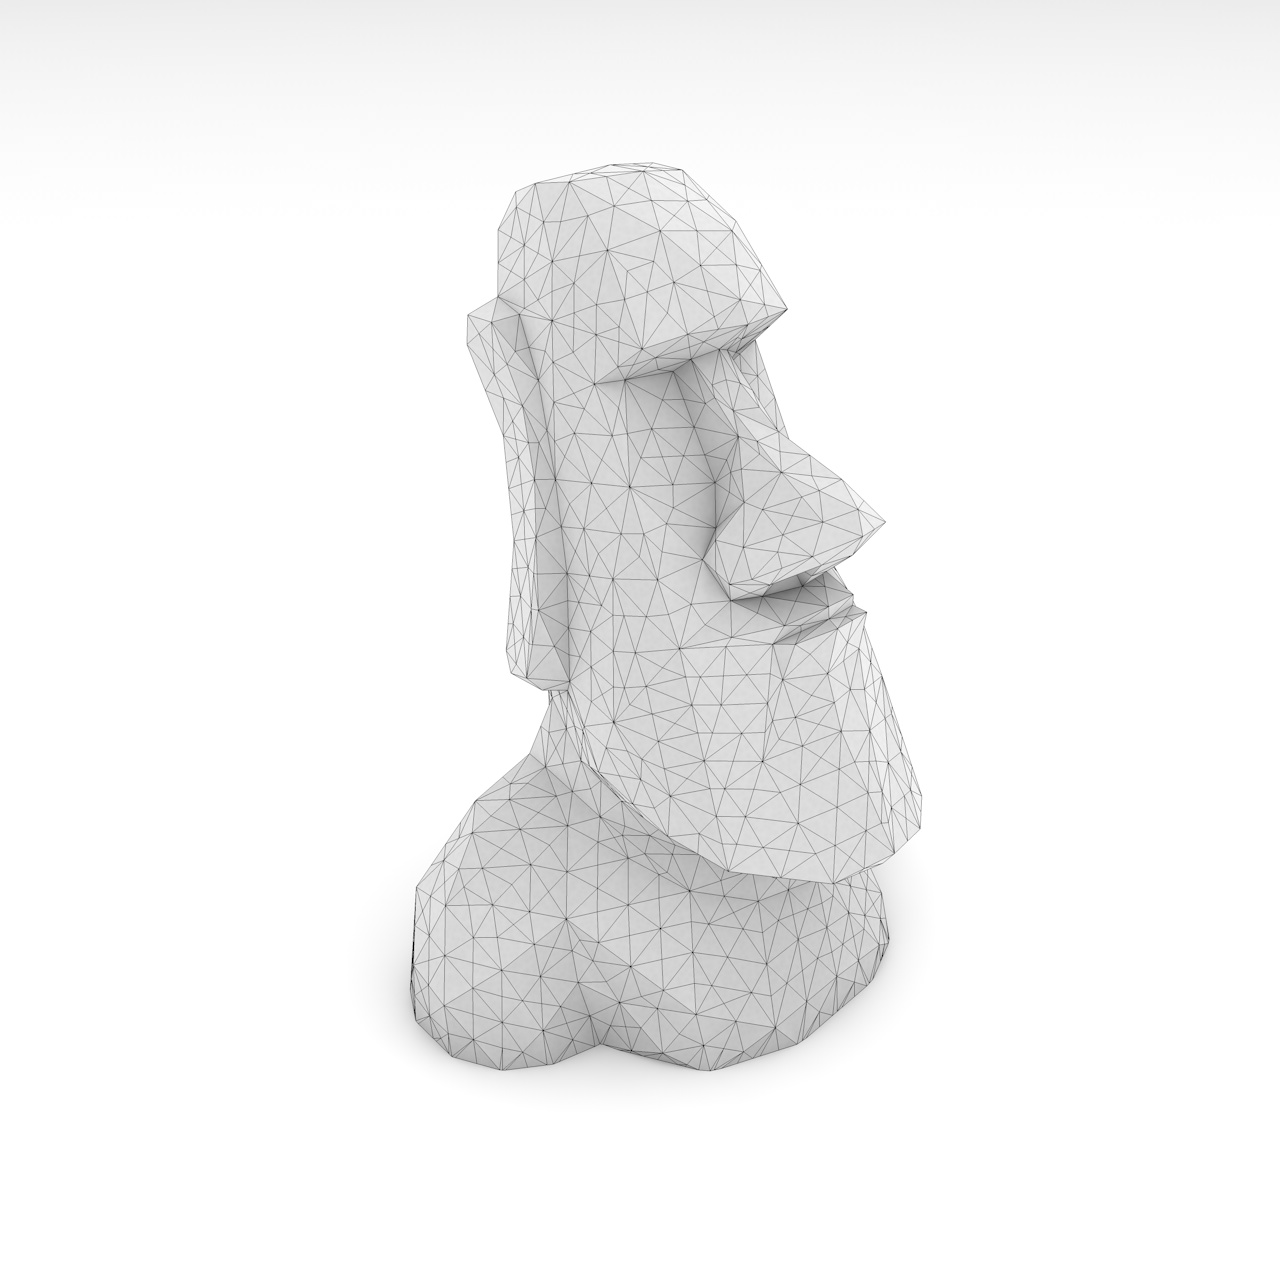 Alacsony poly moai 3d nyomtatási modell